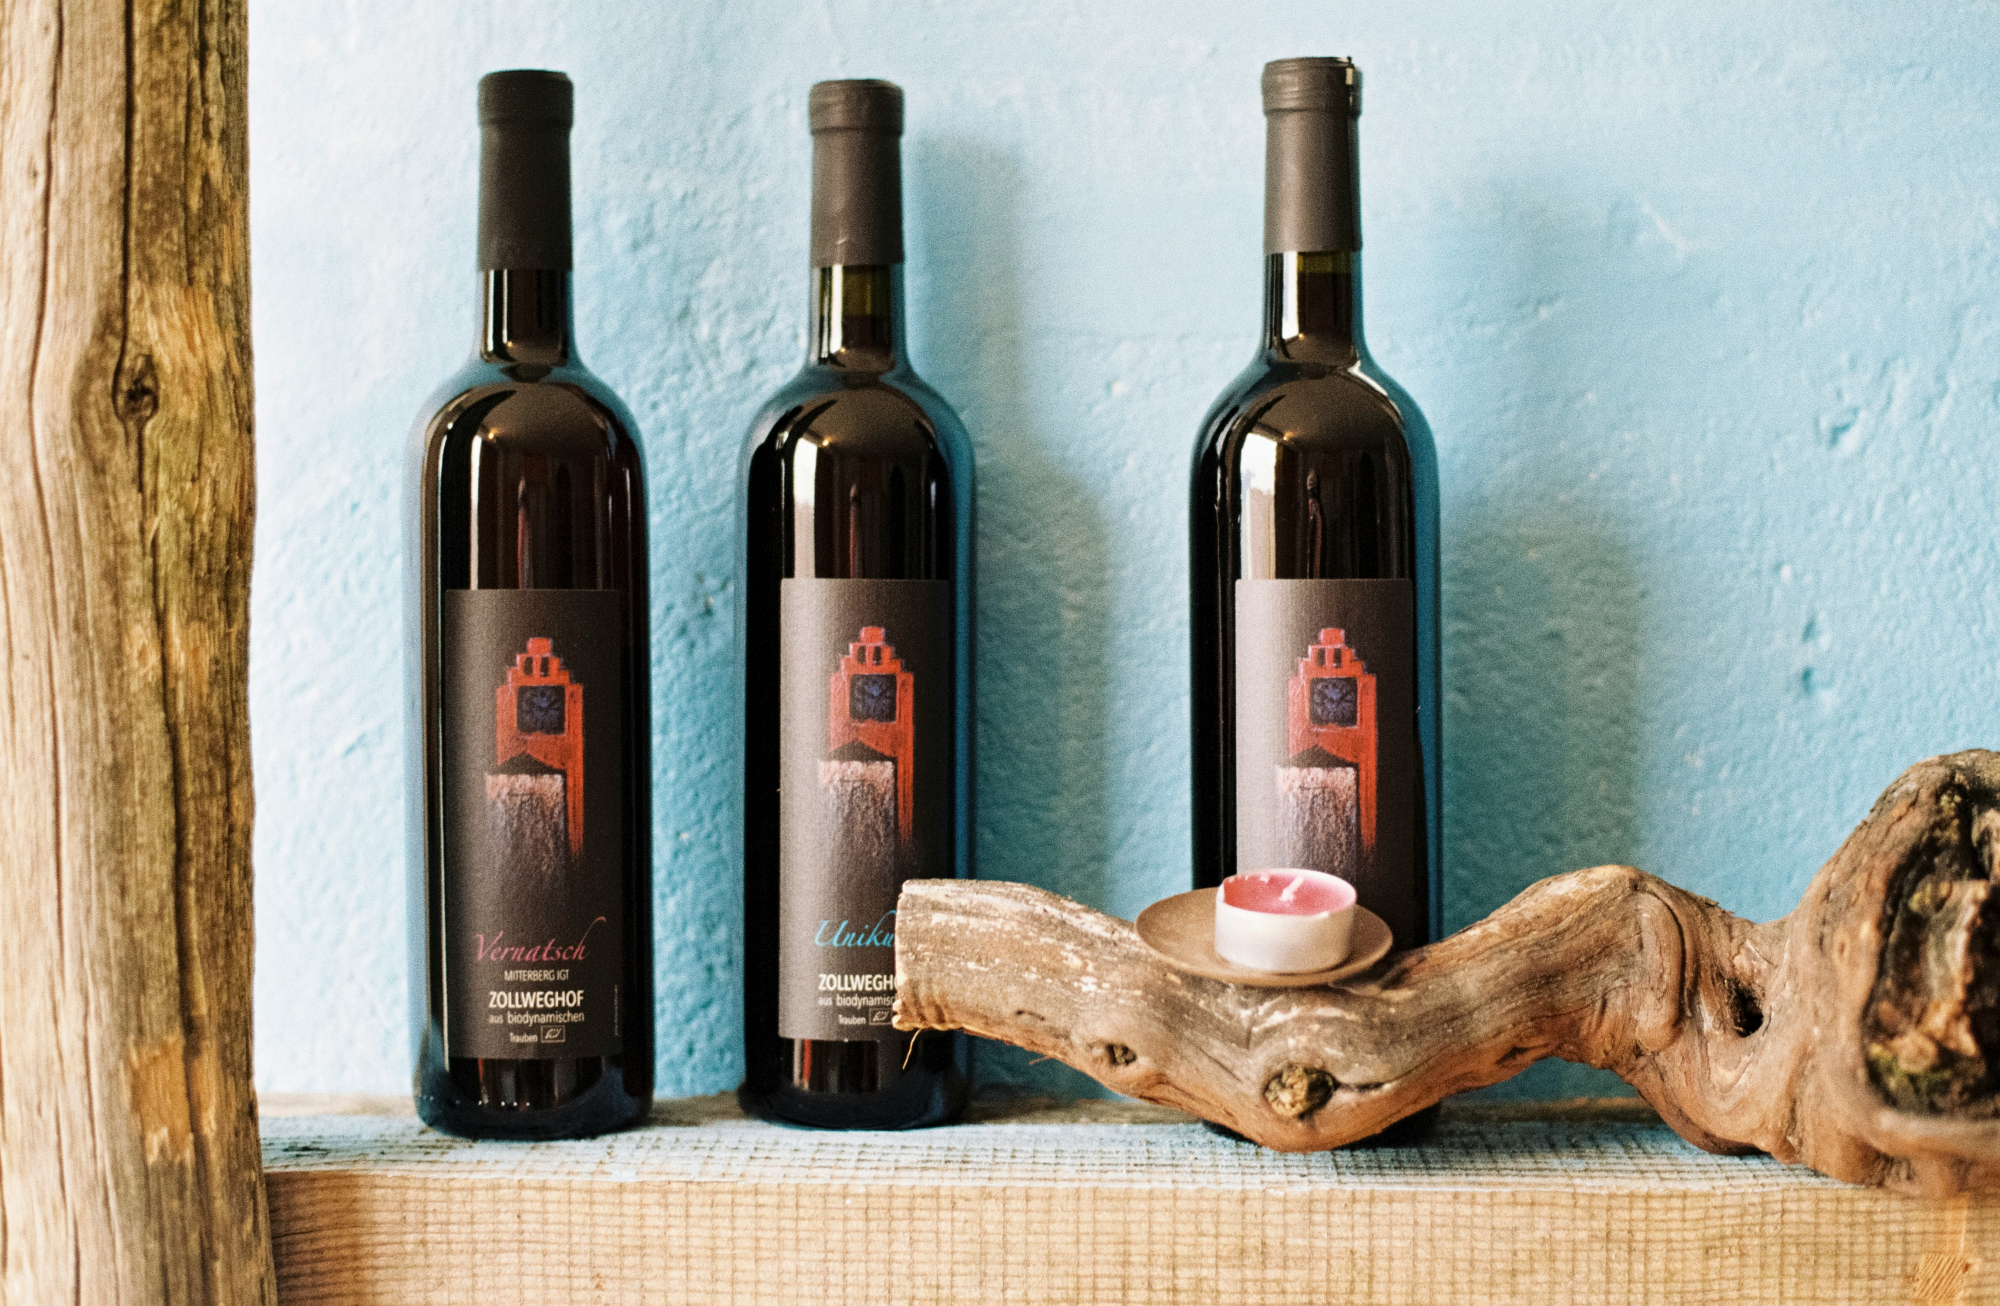 découvrez notre sélection de vins biologiques. des vins purs et naturels élaborés dans le respect de l'environnement et des traditions viticoles. savourez le meilleur de la nature dans chaque verre.